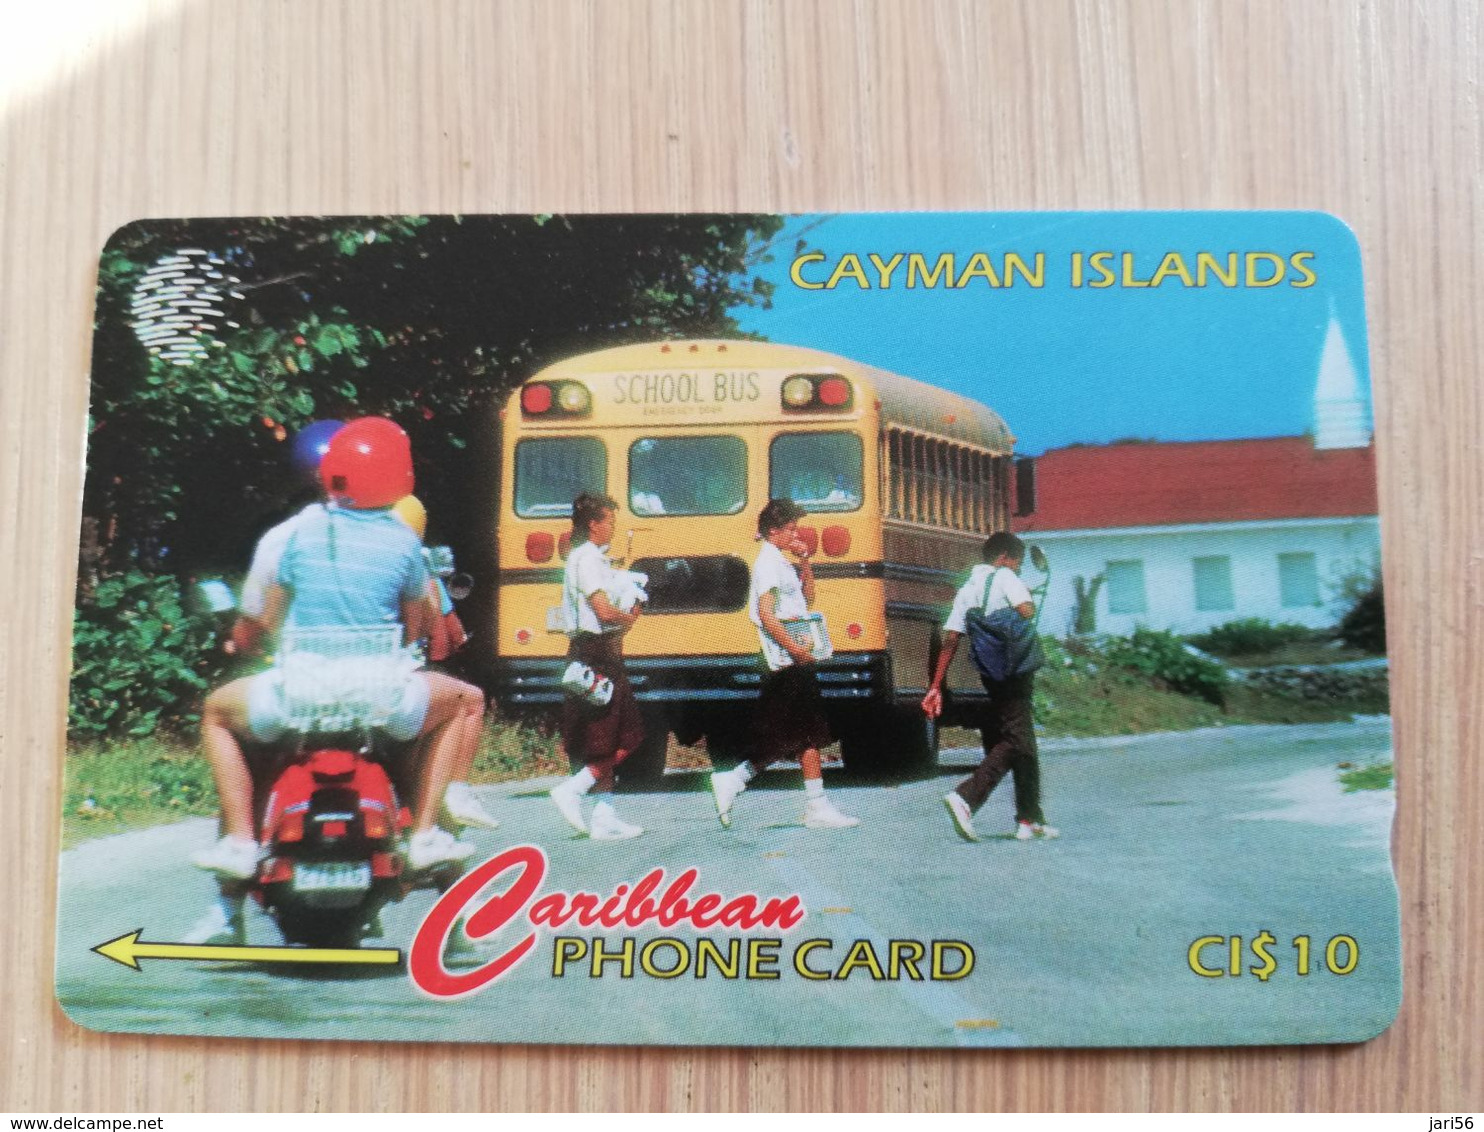 CAYMAN ISLANDS  CI $ 10,-  CAY-163A CONTROL NR 163CCIA  SCHOOL DAY/BUS     Fine Used Card  ** 3115** - Cayman Islands